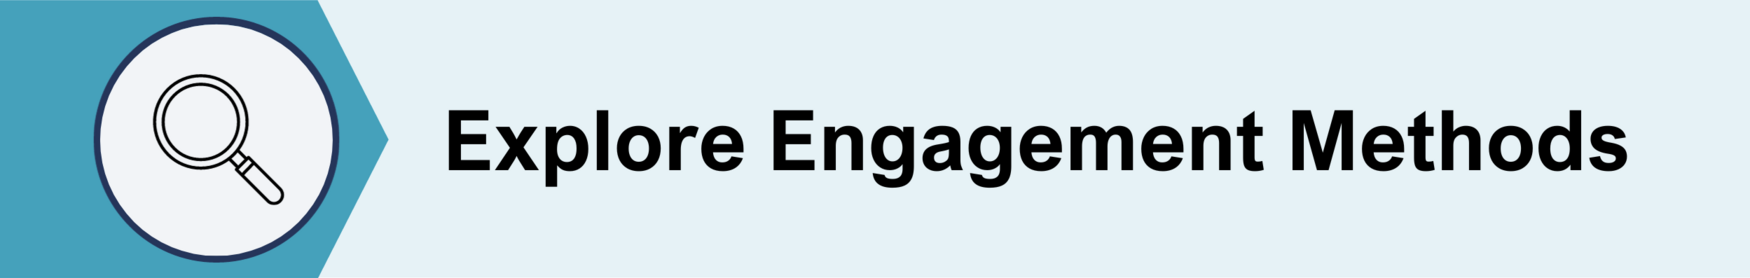 Title: Explore Engagement Methods